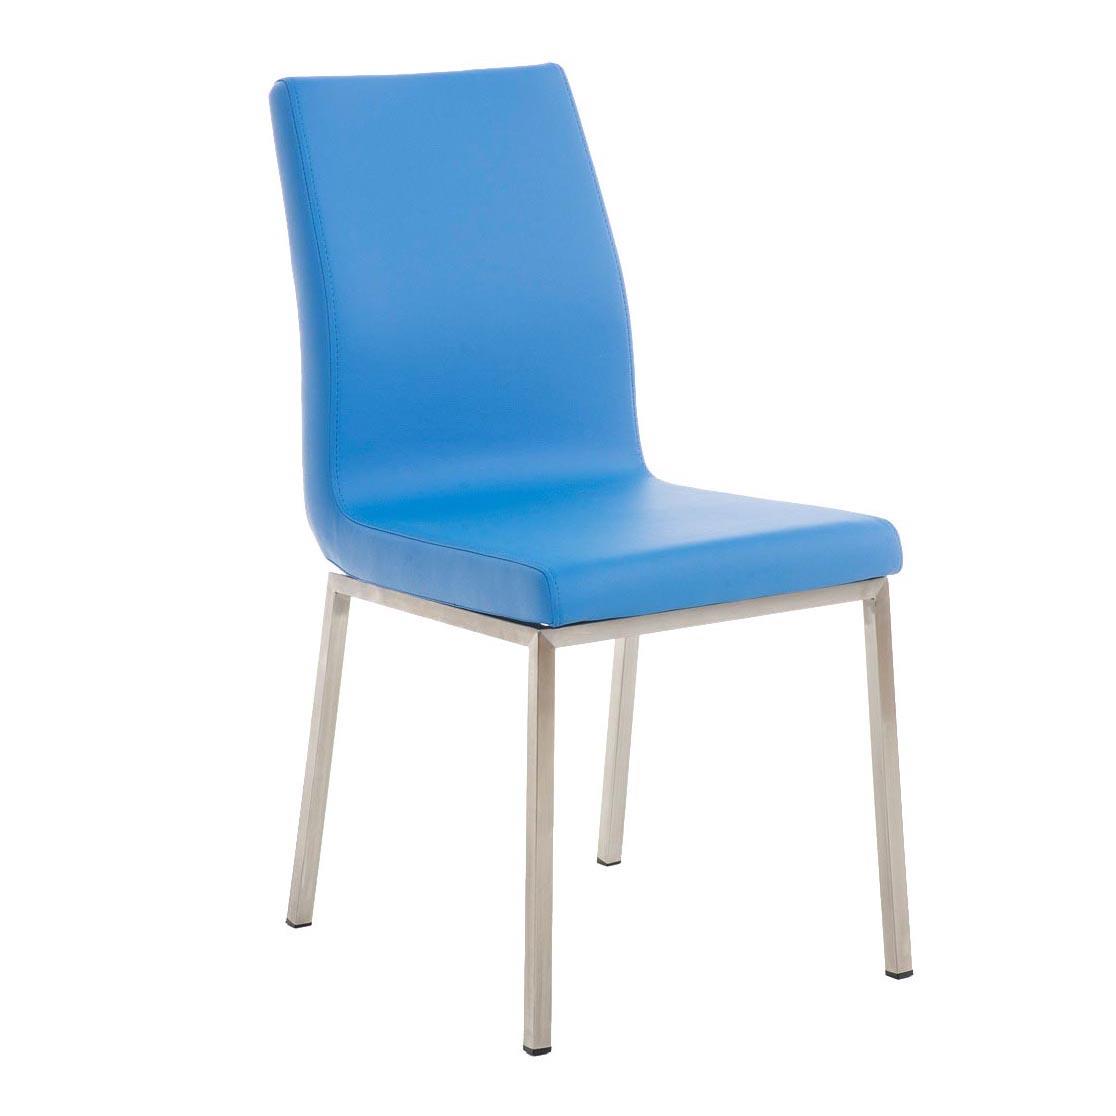 Chaise visiteur COLOMBE, Grand Rembourrage, Revêtement en Cuir, Bleu